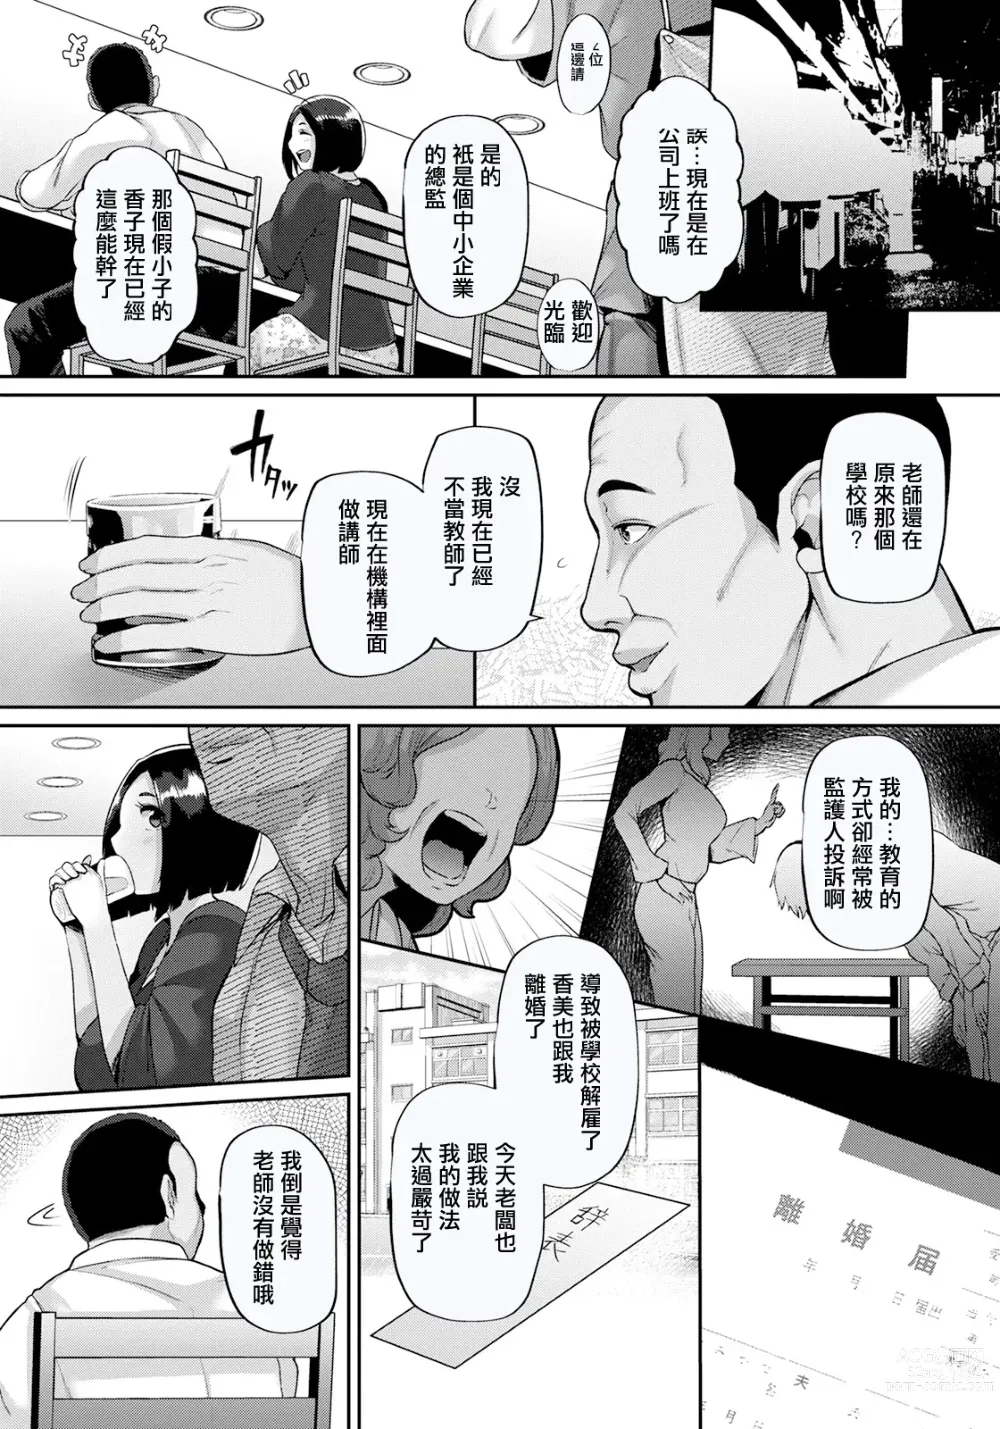 Page 2 of manga Seishun Playback